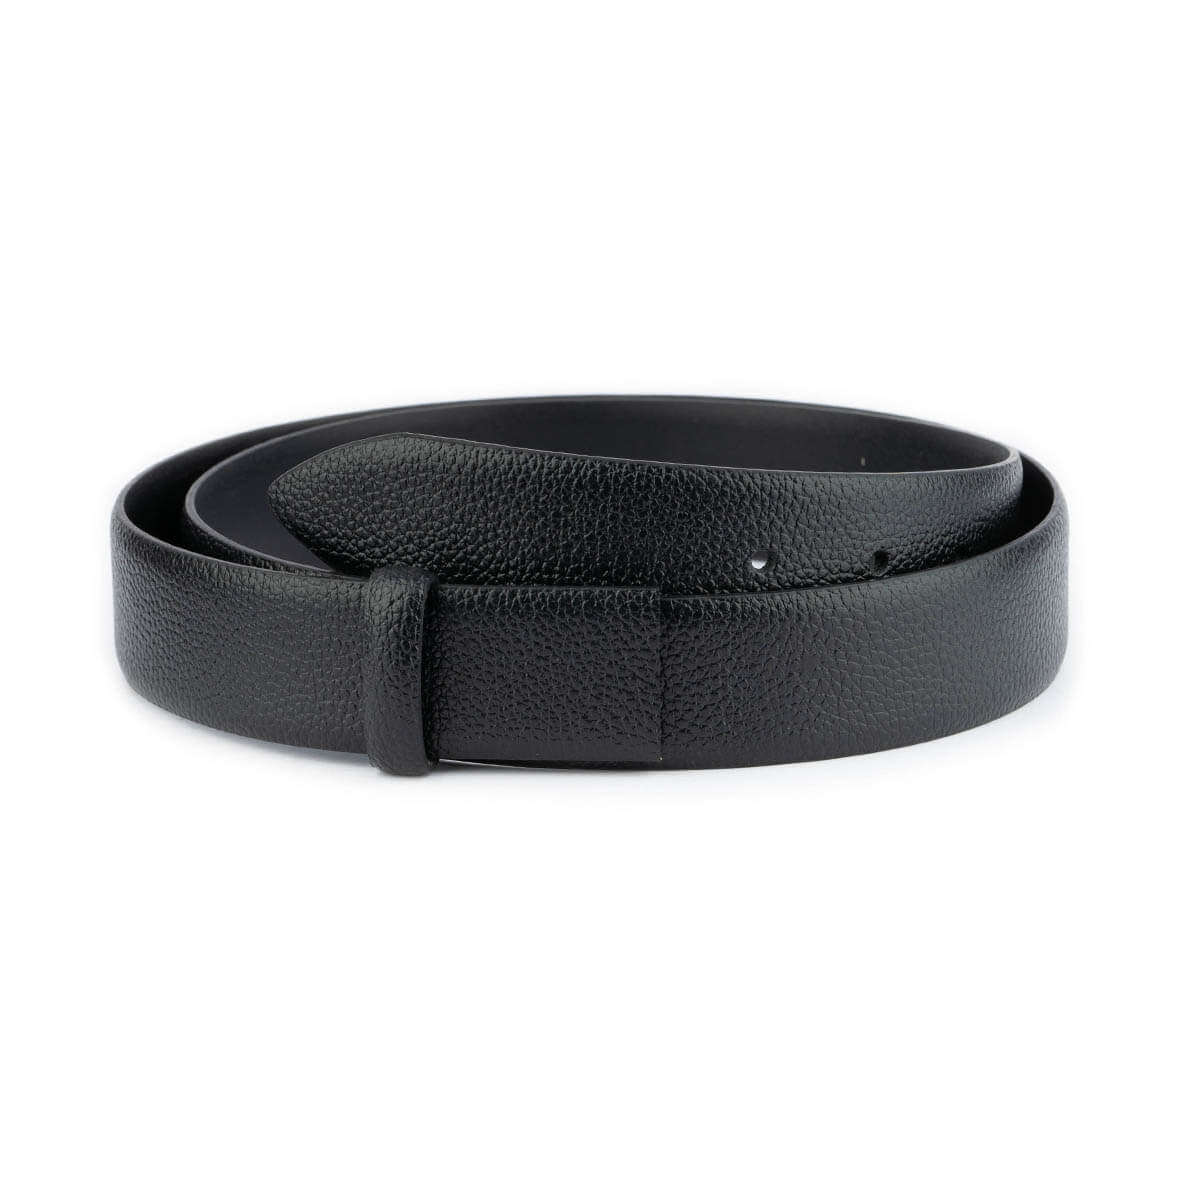 Buy Black Calf Leather Strap For Belt 3.5 Cm - LeatherBeltsOnline.com